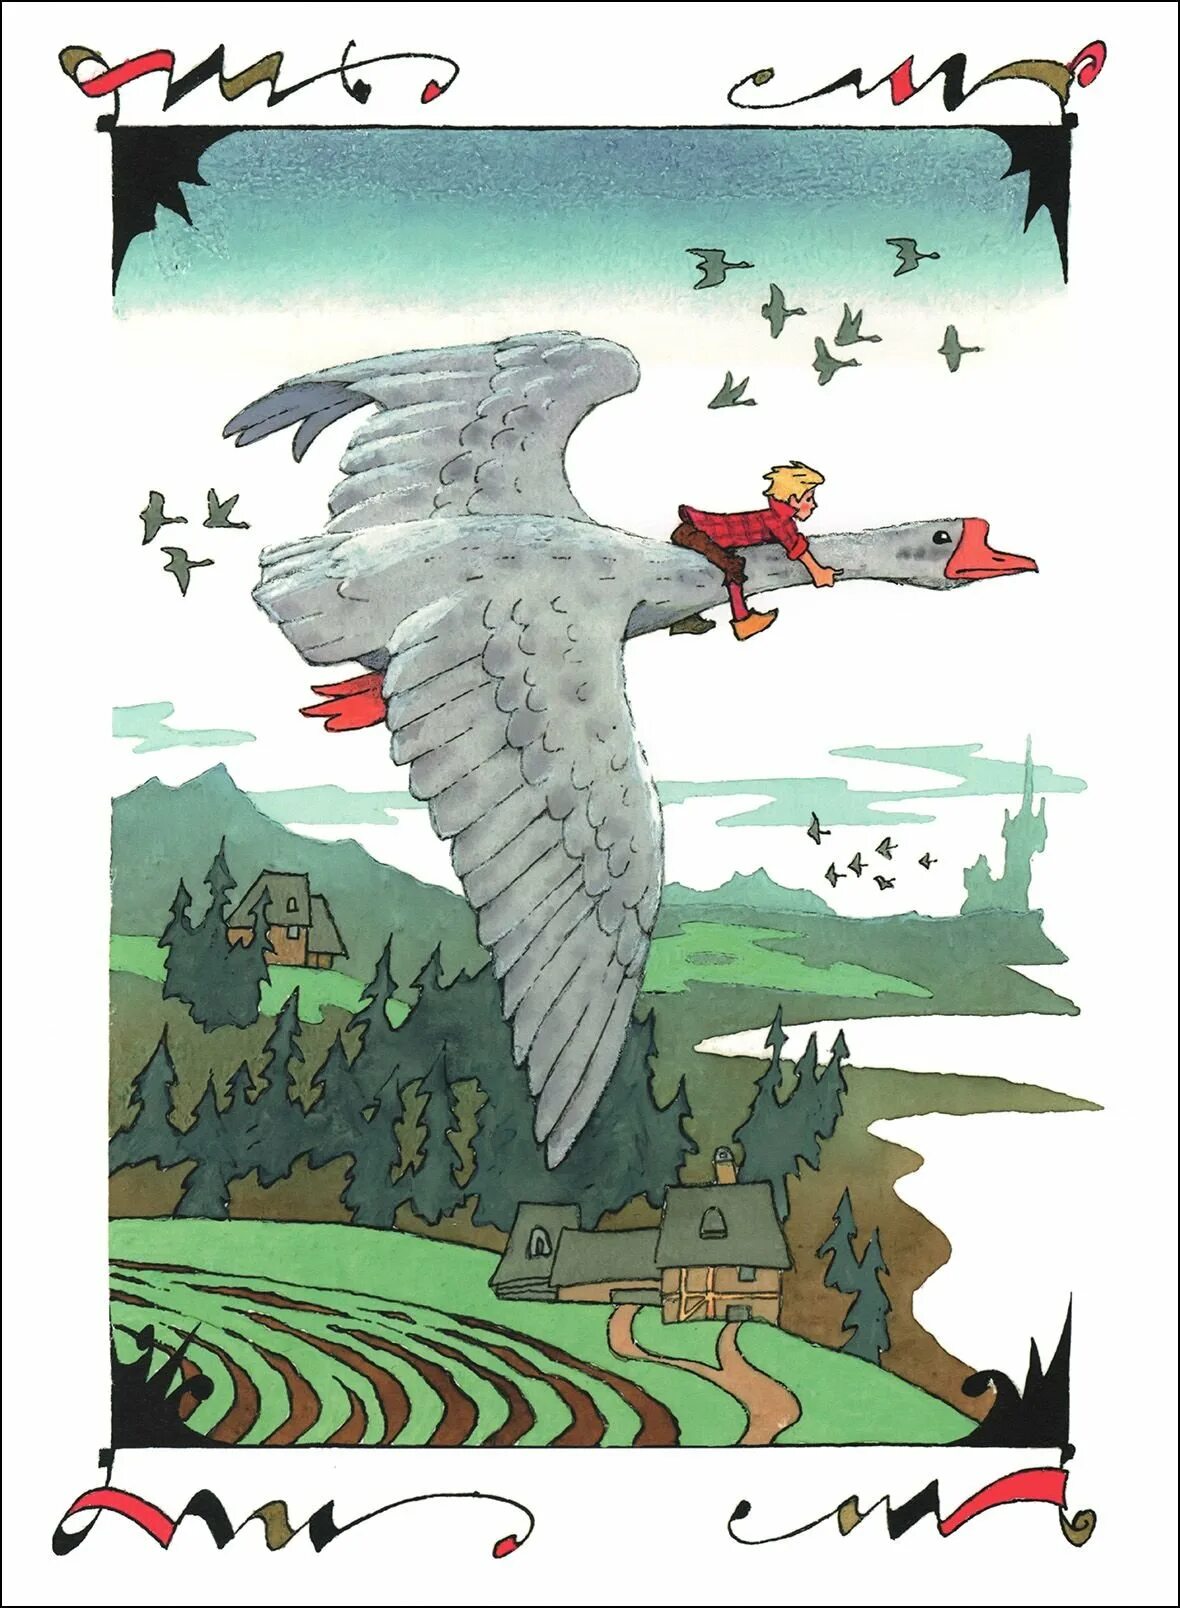 Путешествовал на гусе. Иллюстрации Лагерлеф сказочное путешествие Нильса с дикими гусями. С.лагерлёф чудесное путешествие Нильса с дикими гусями иллюстрации.